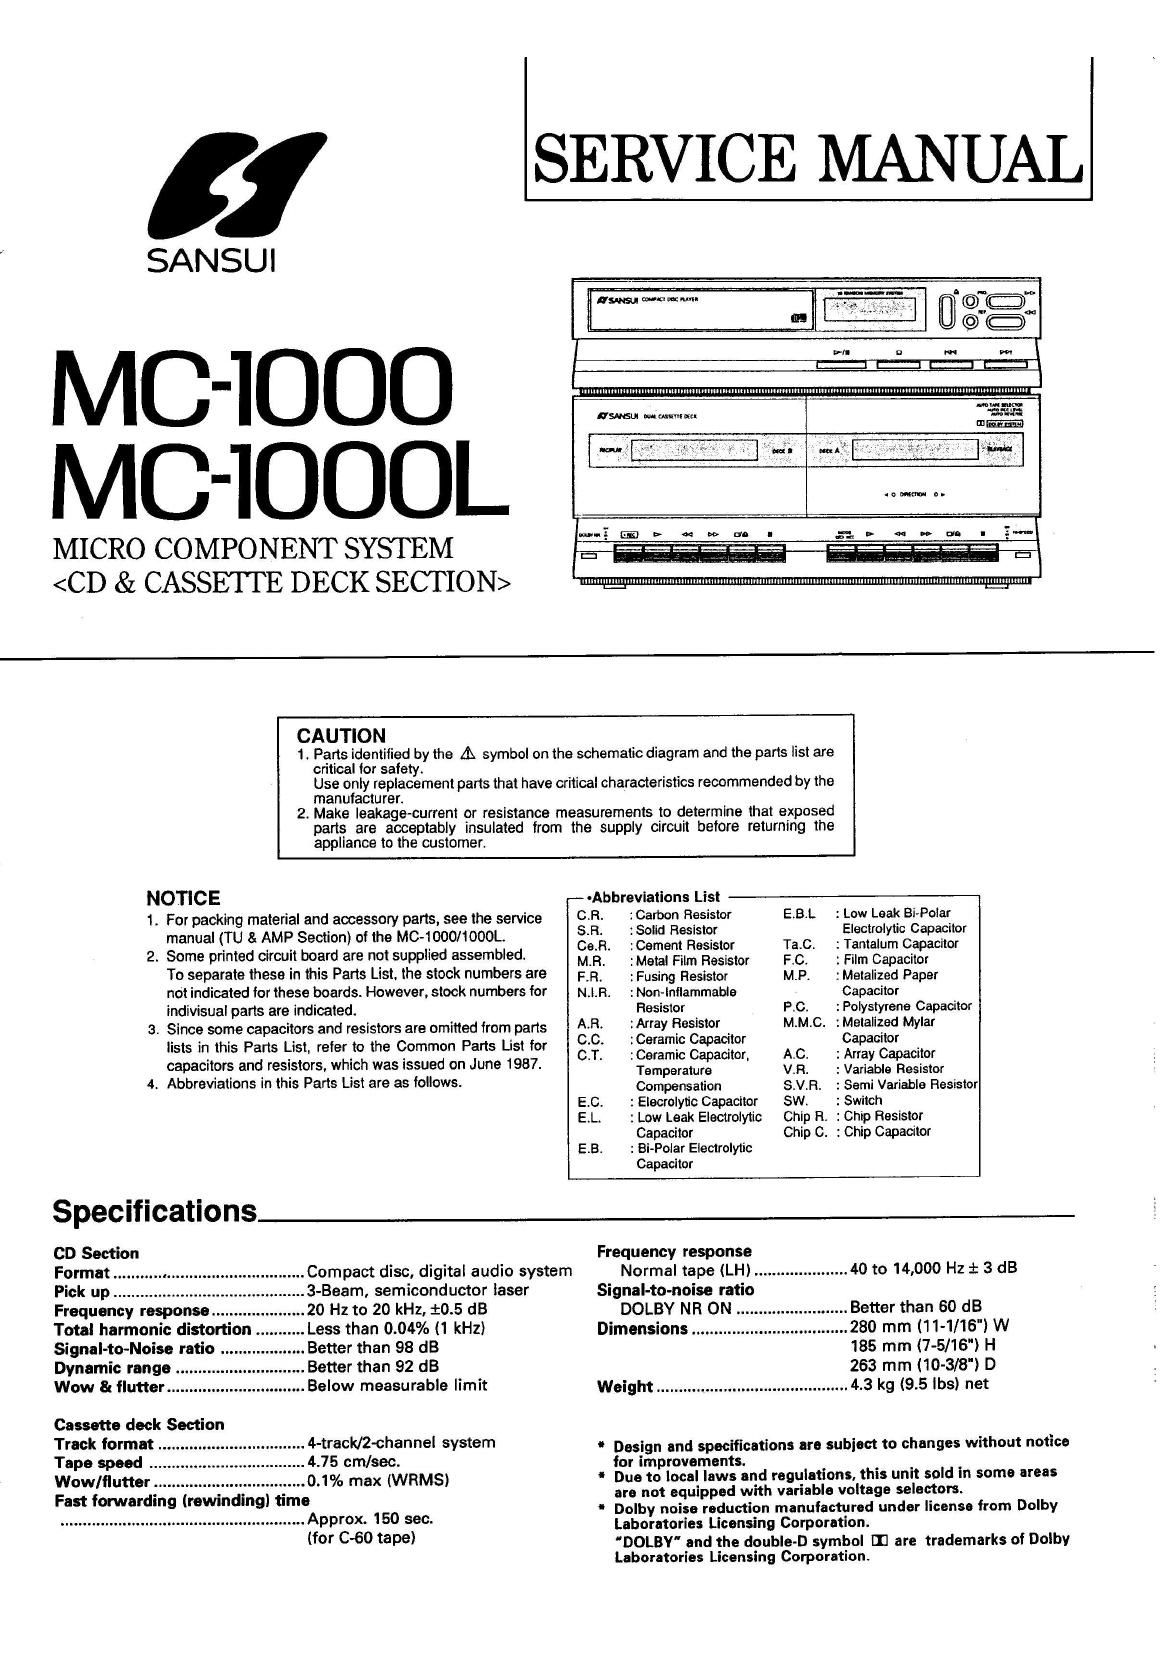 Sansui MC 1000 Service Manual